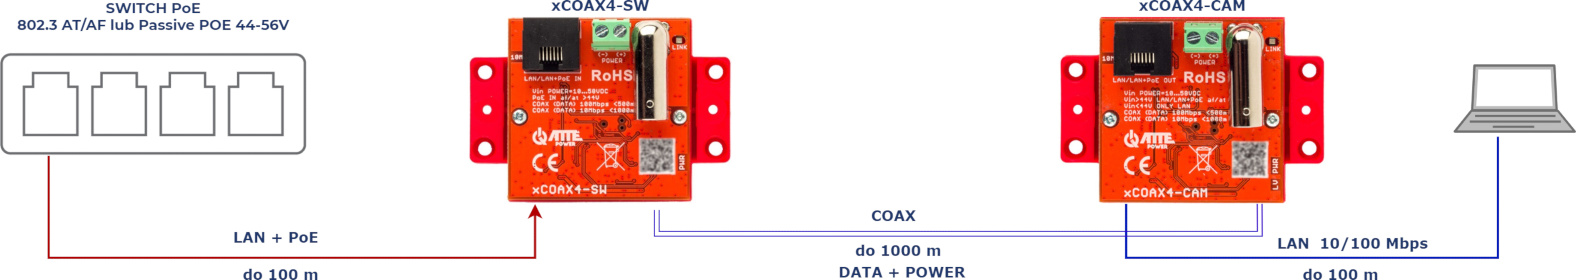 Podstawowe zastosowanie zestawu xCOAX4-SET do sieci Ethernet